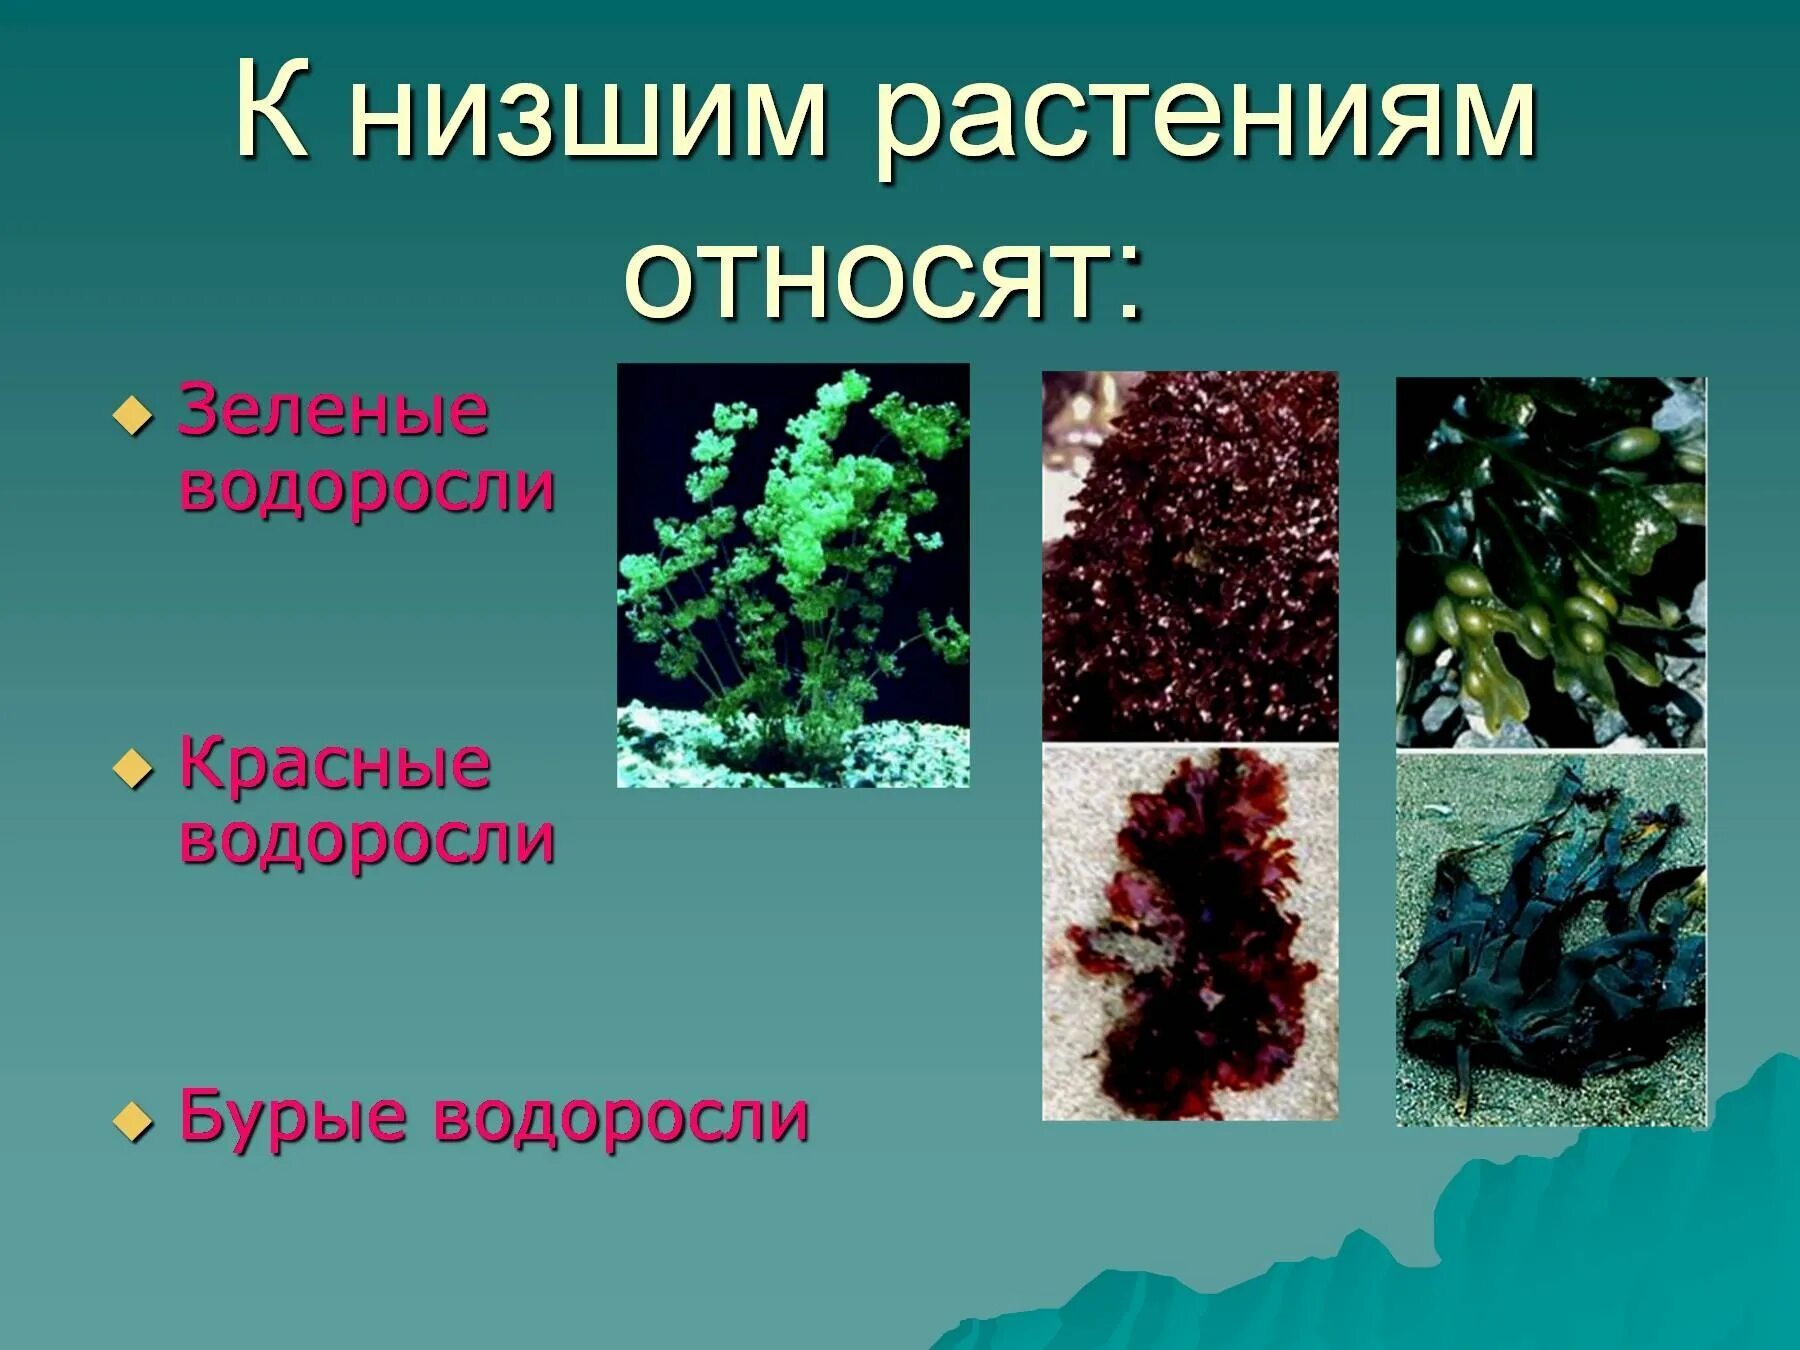 Контрольная водоросли. Низшие растения. Растения которые относятся к низшим. Низкие растения. Название низших растений.